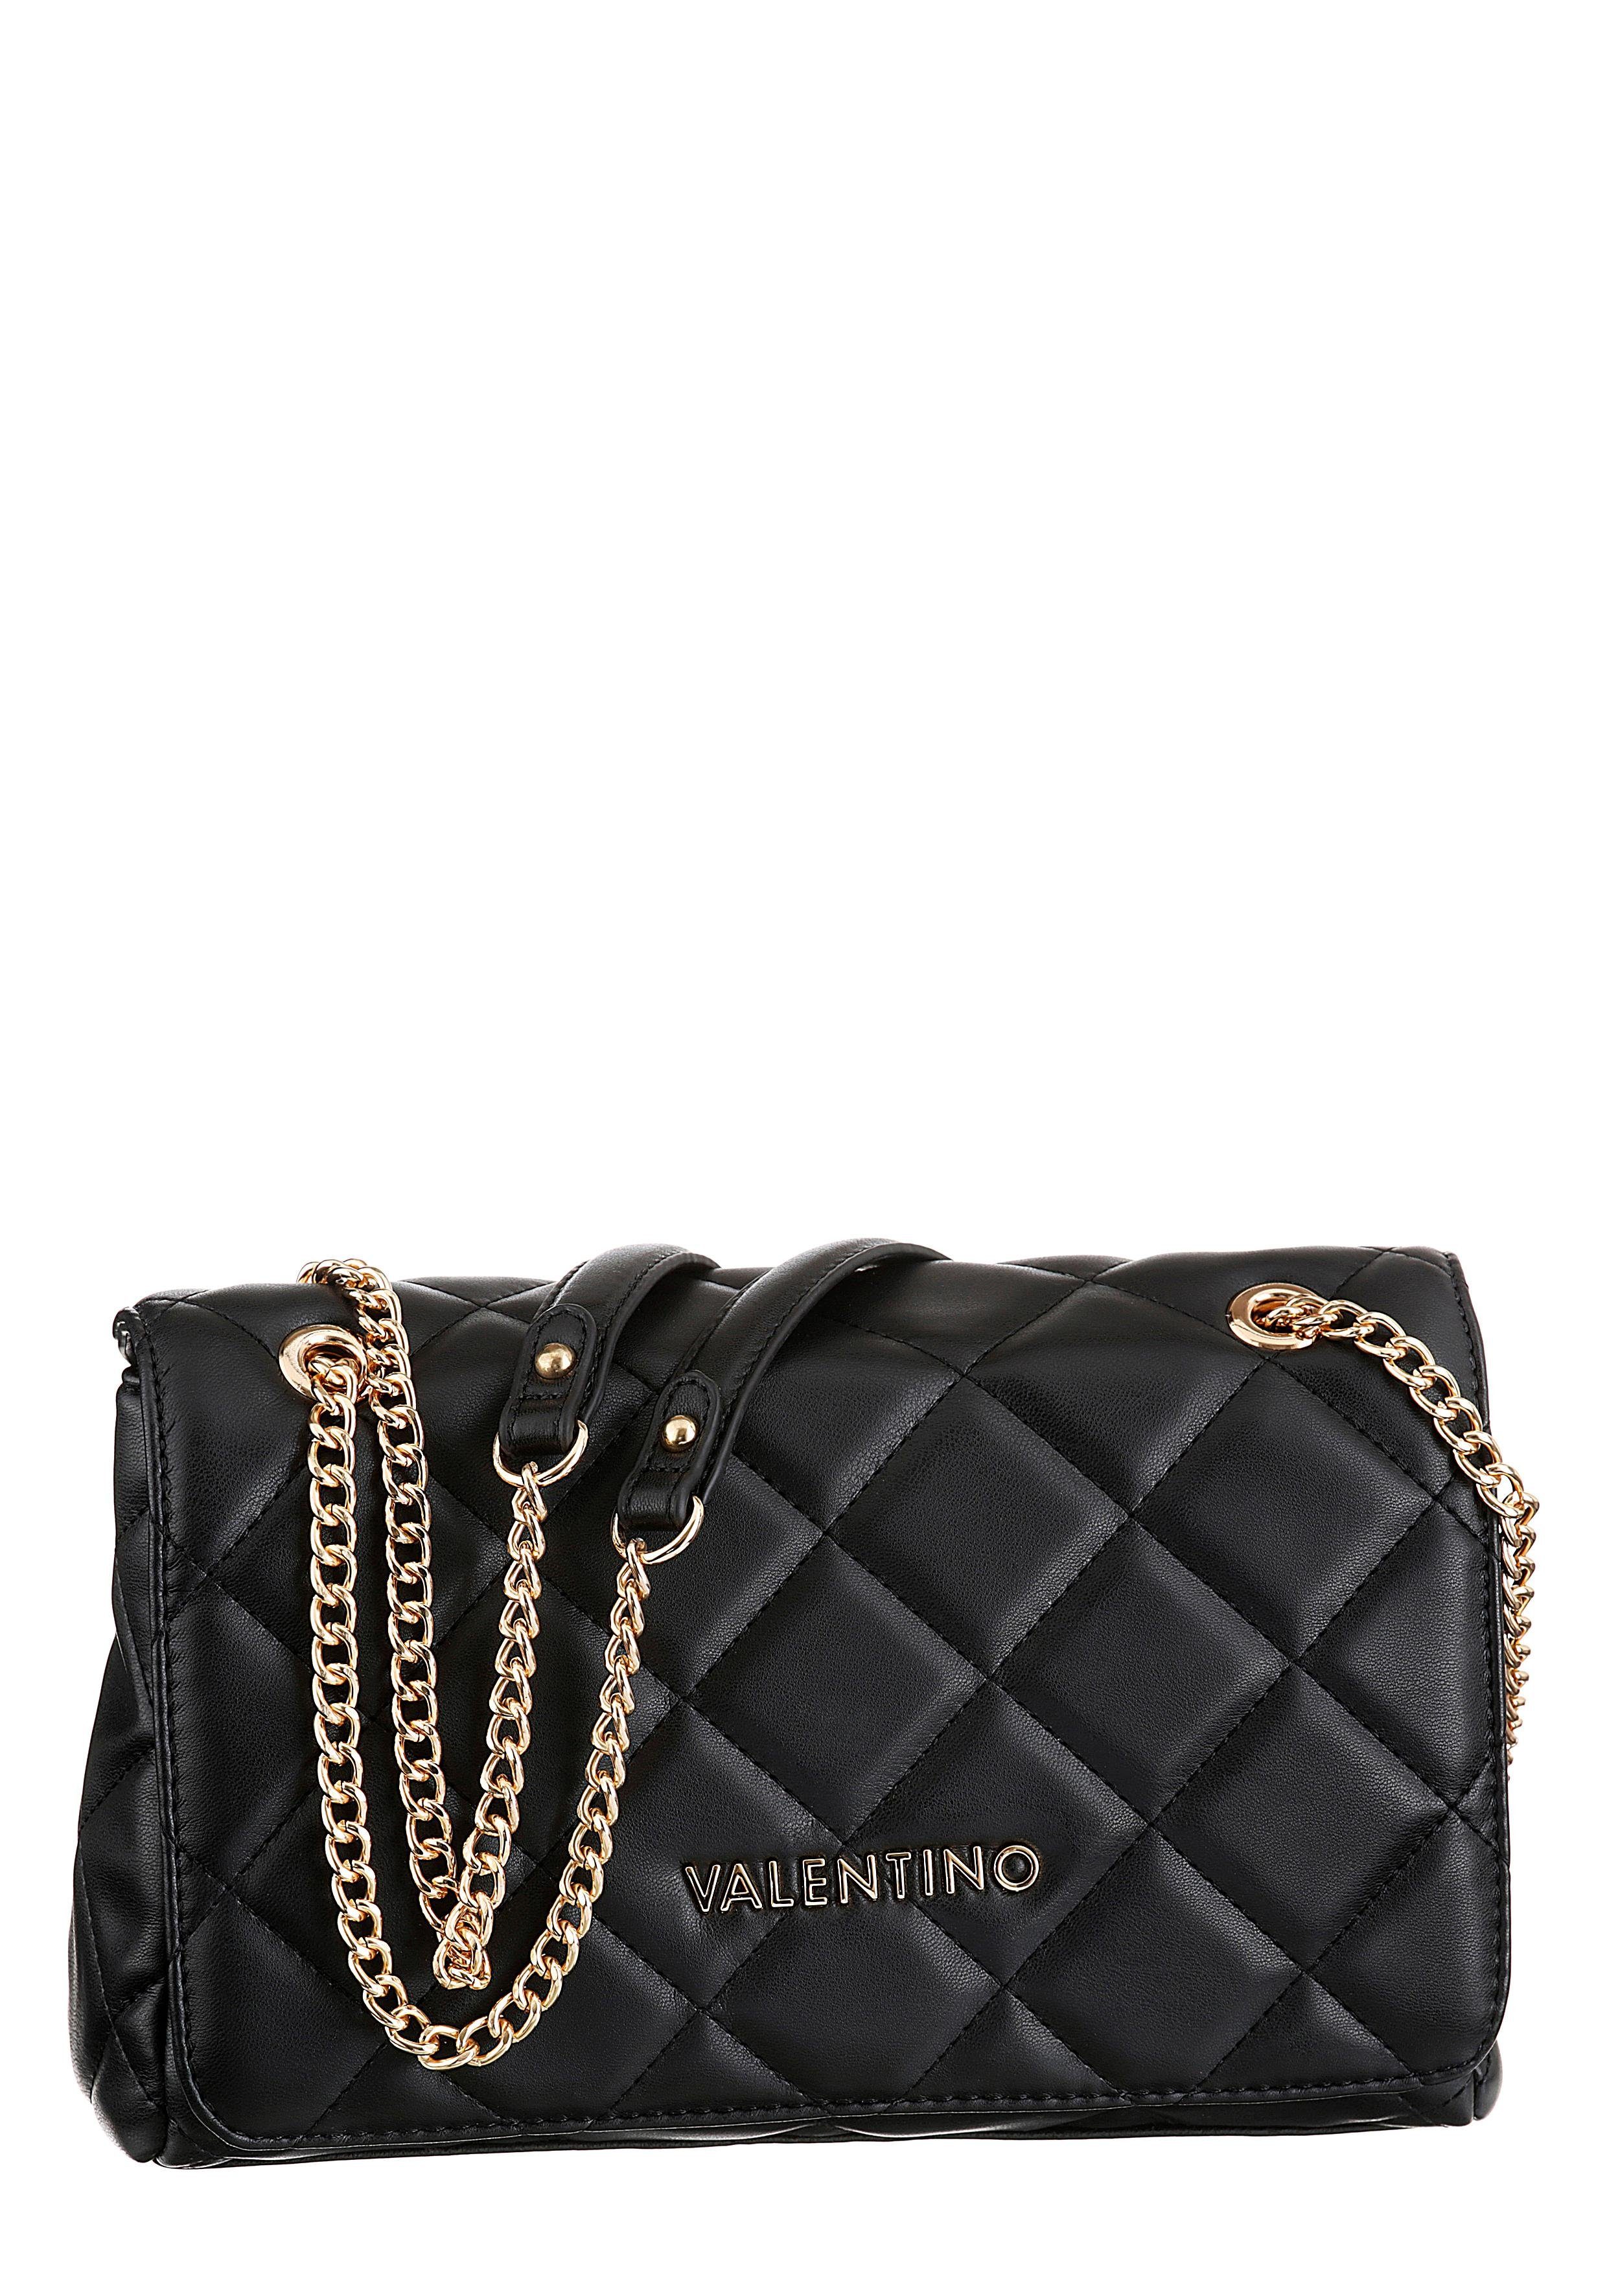 Valentino Taschen online kaufen | OTTO